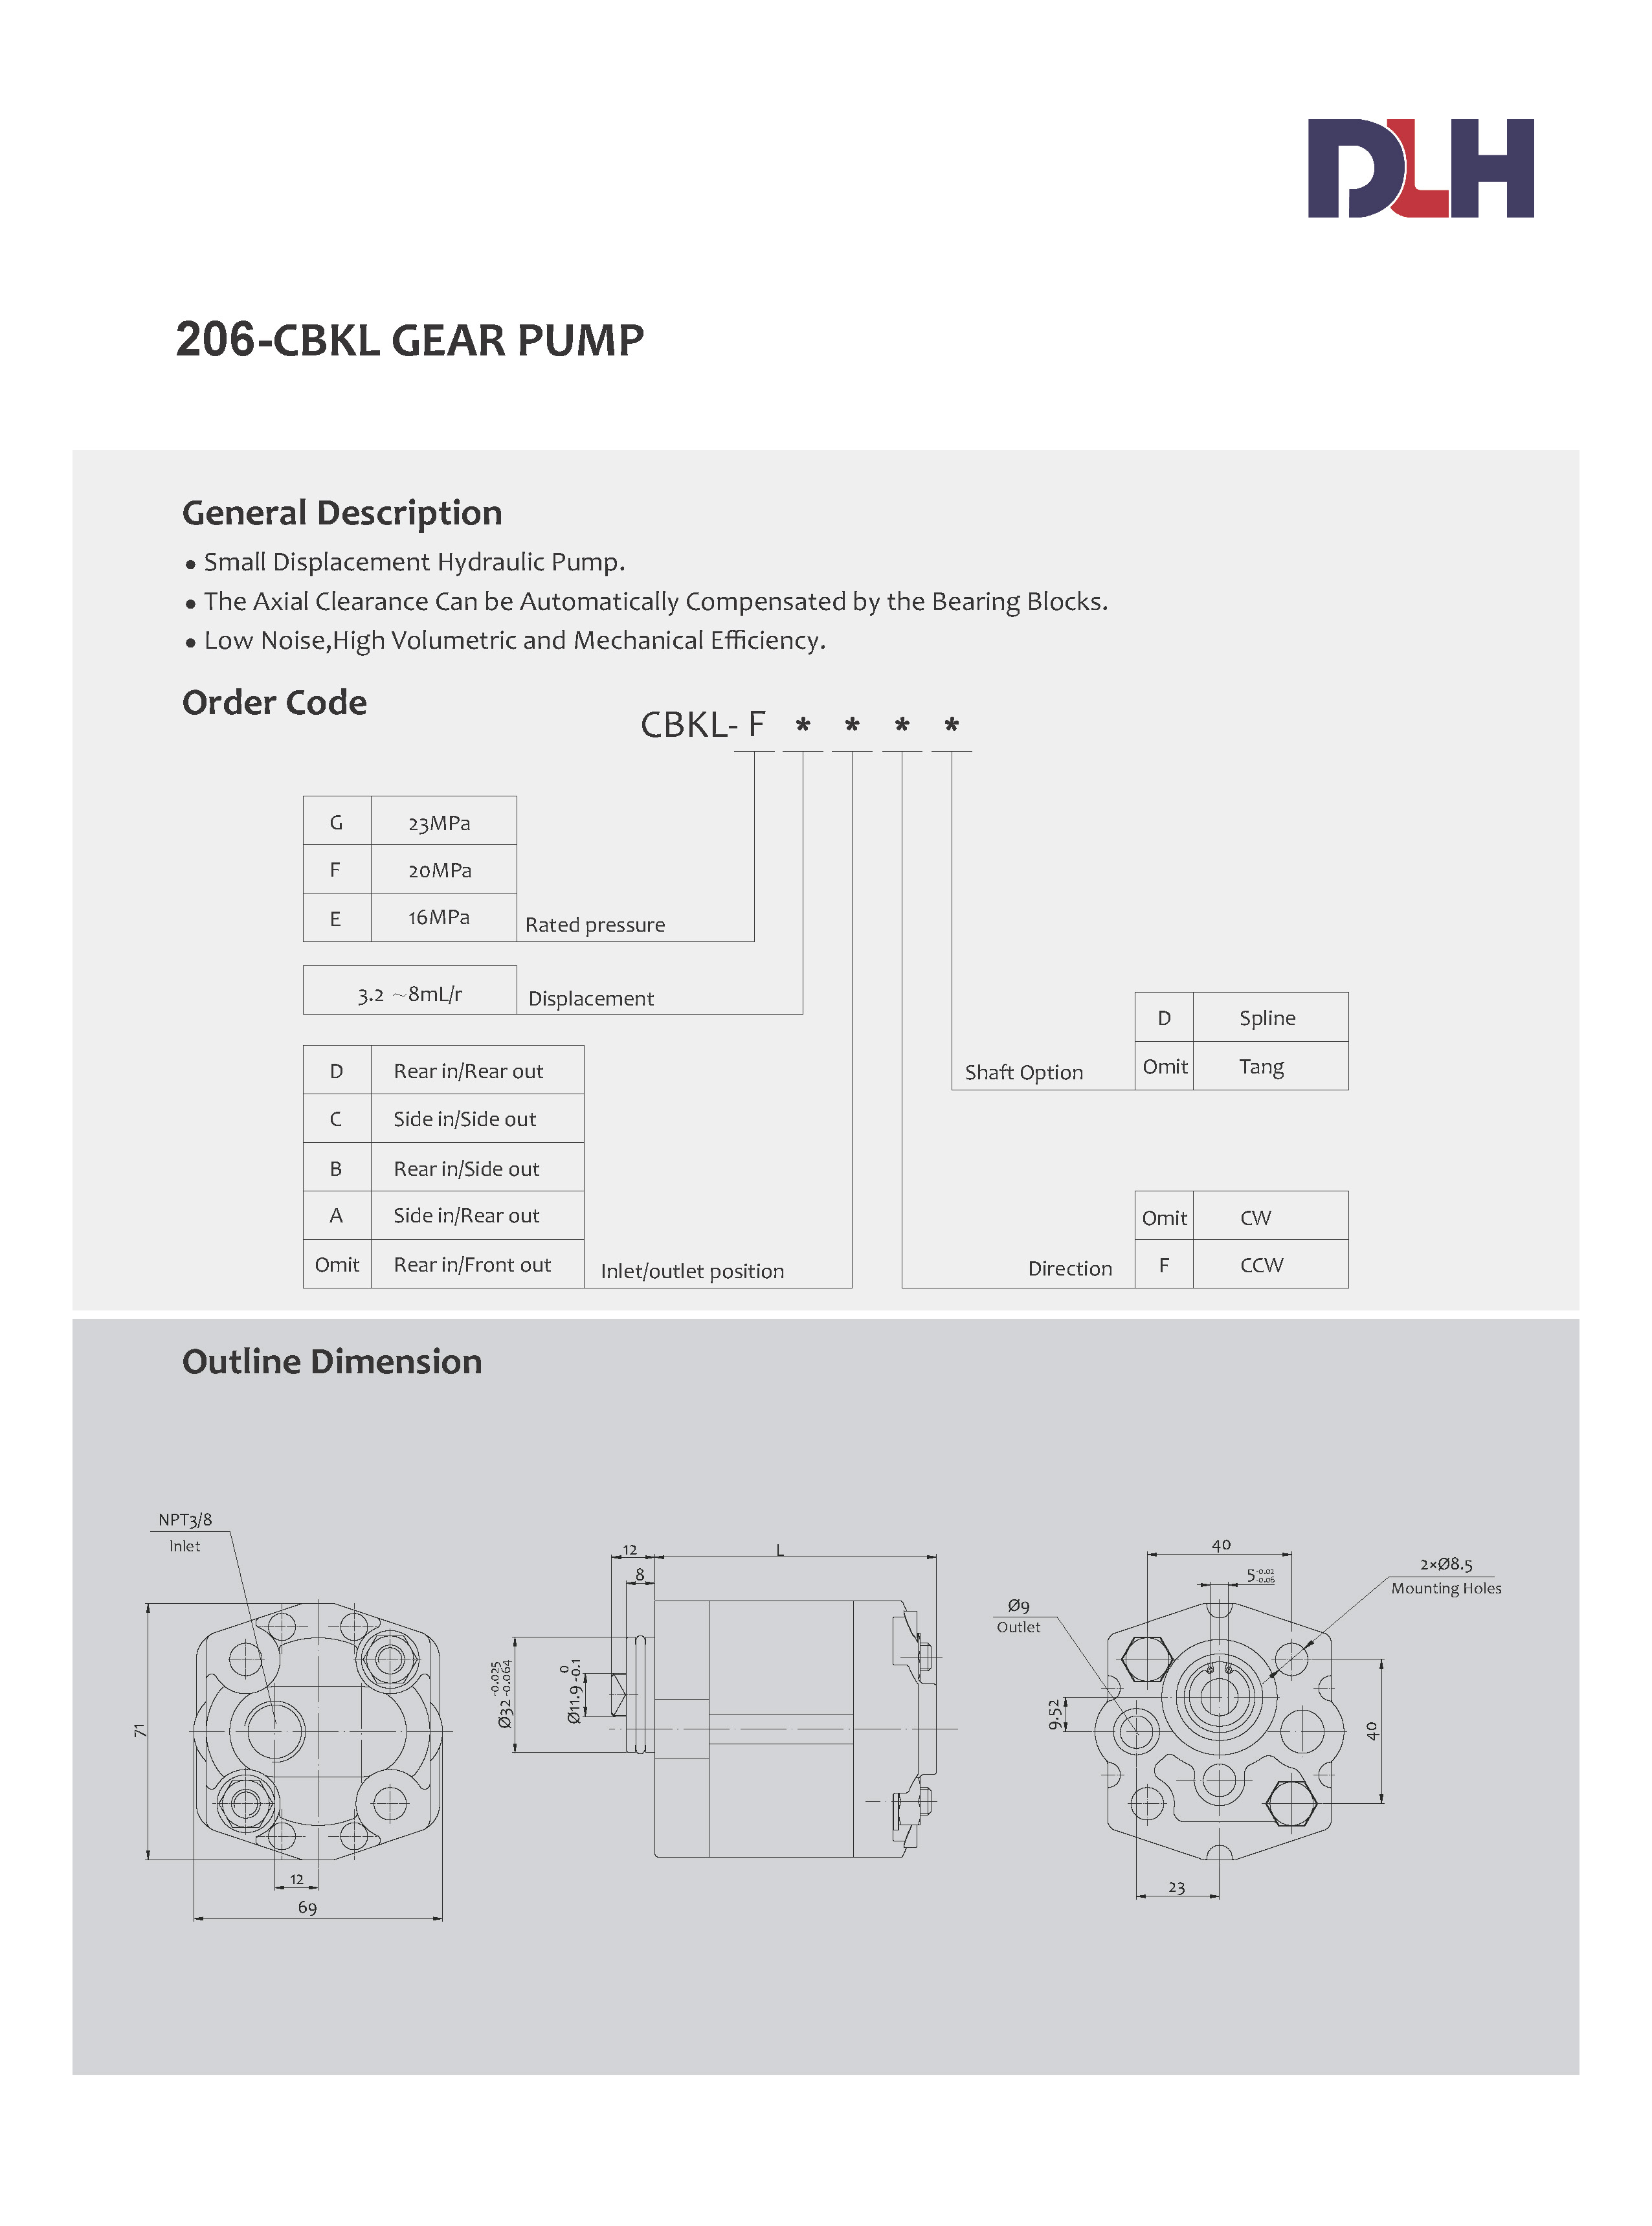 CBKL Gear Pumps